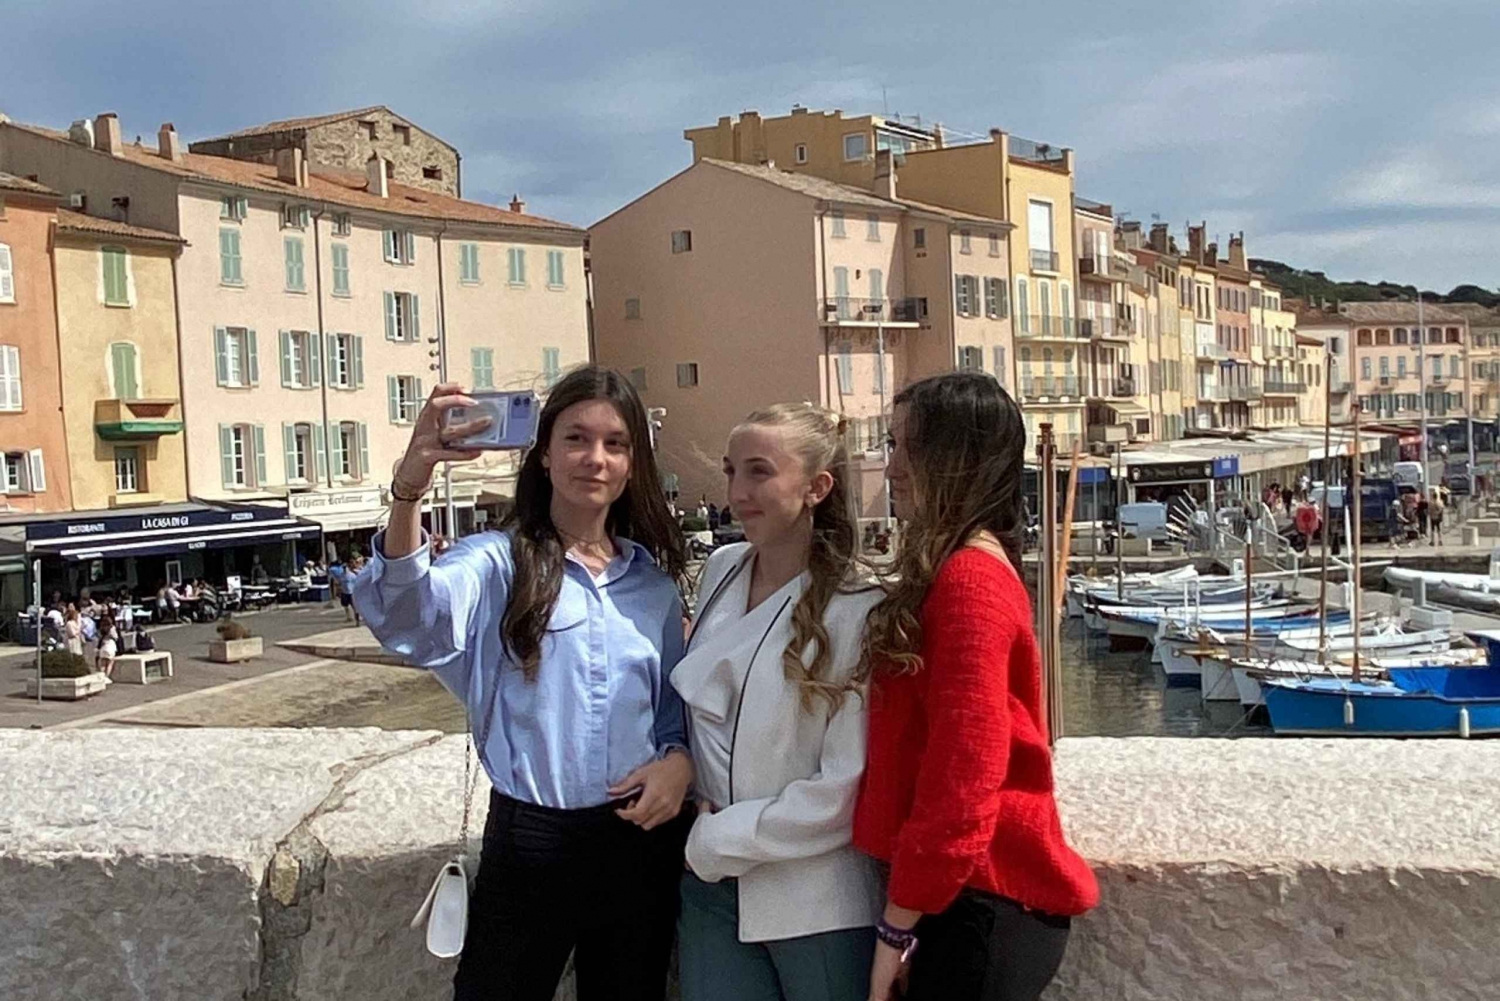 Saint Tropez : Netflix Emily in Paris Tour